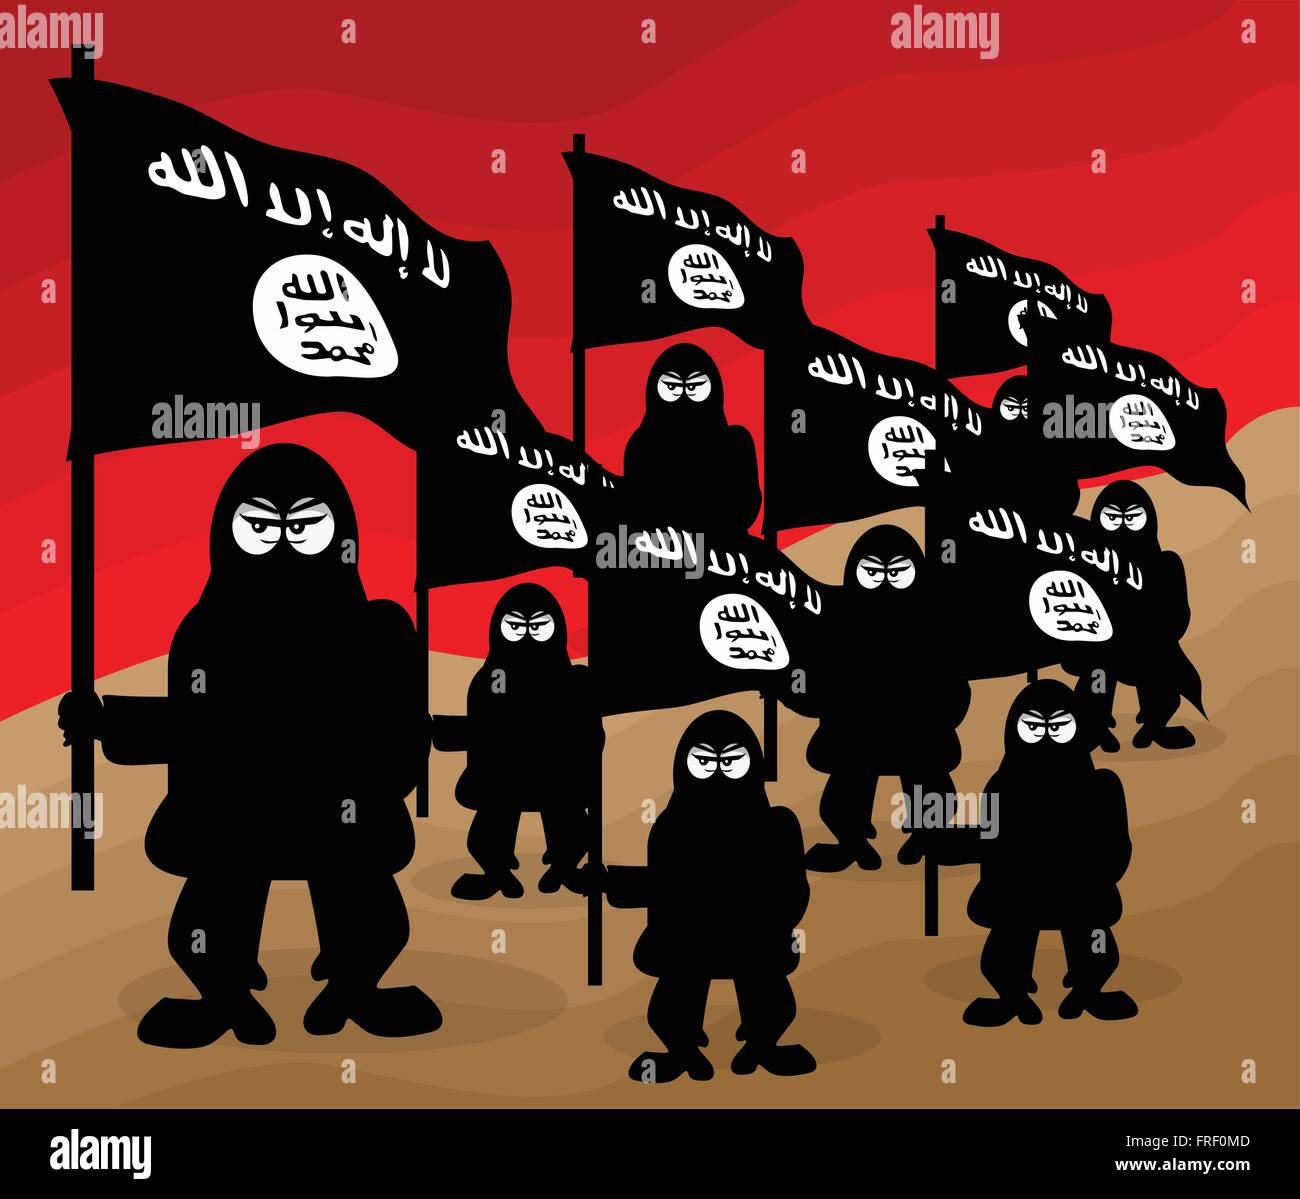 ISIS Terrorist Organisation Cartoon Illustration Stock Vector Image & Art -  Alamy